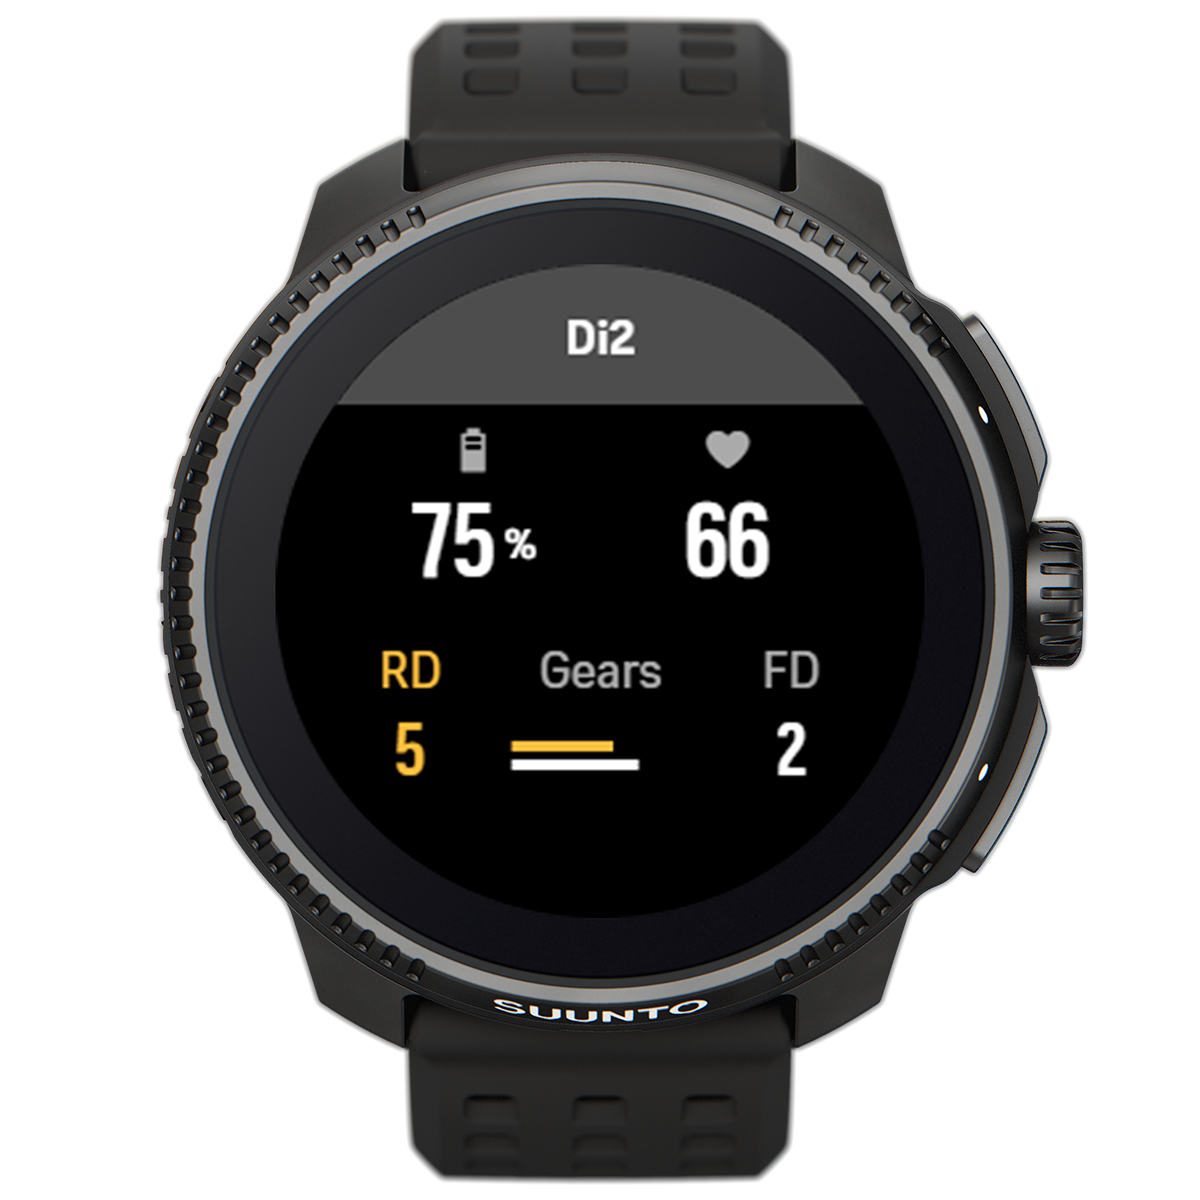 Shimano Di2 SuuntoPlus sports app connects your Suunto watch with Shimano's Di2 electronic shifting.